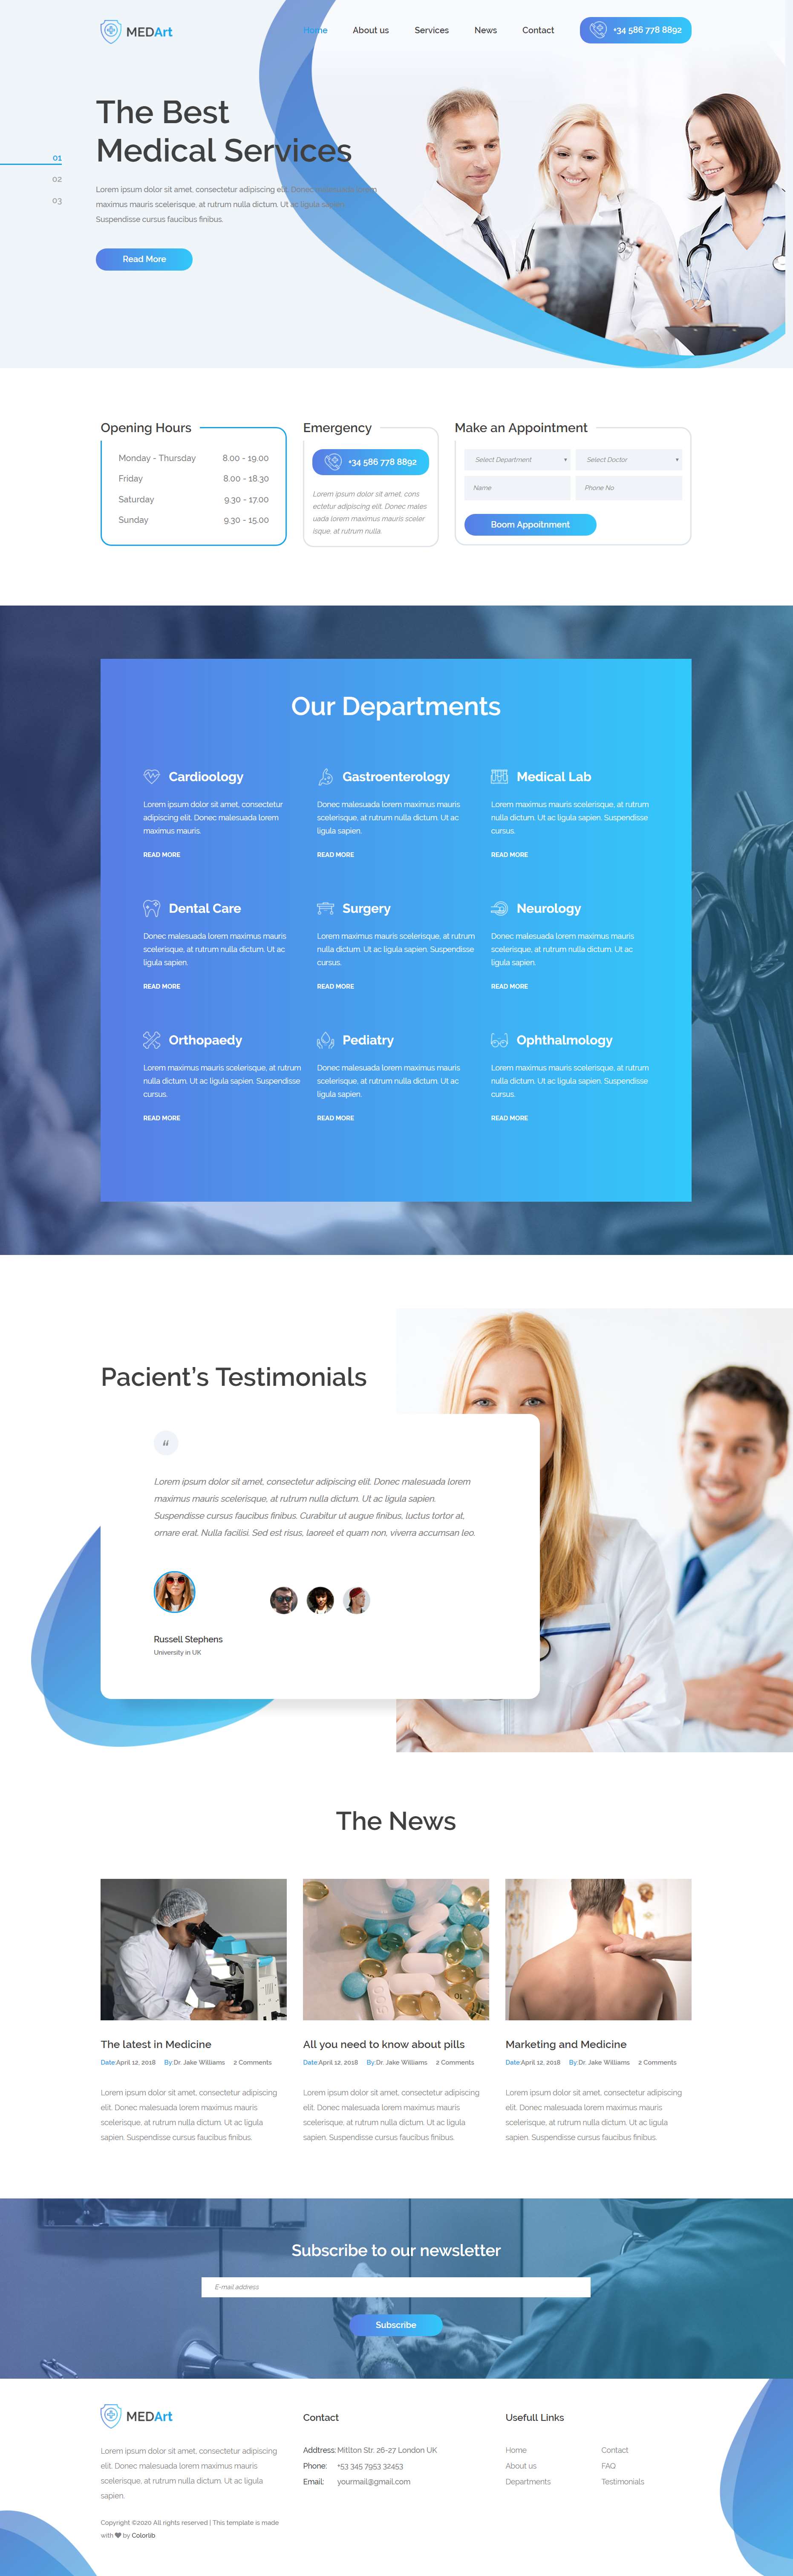 蓝色简洁风格响应式医疗机构网页模板